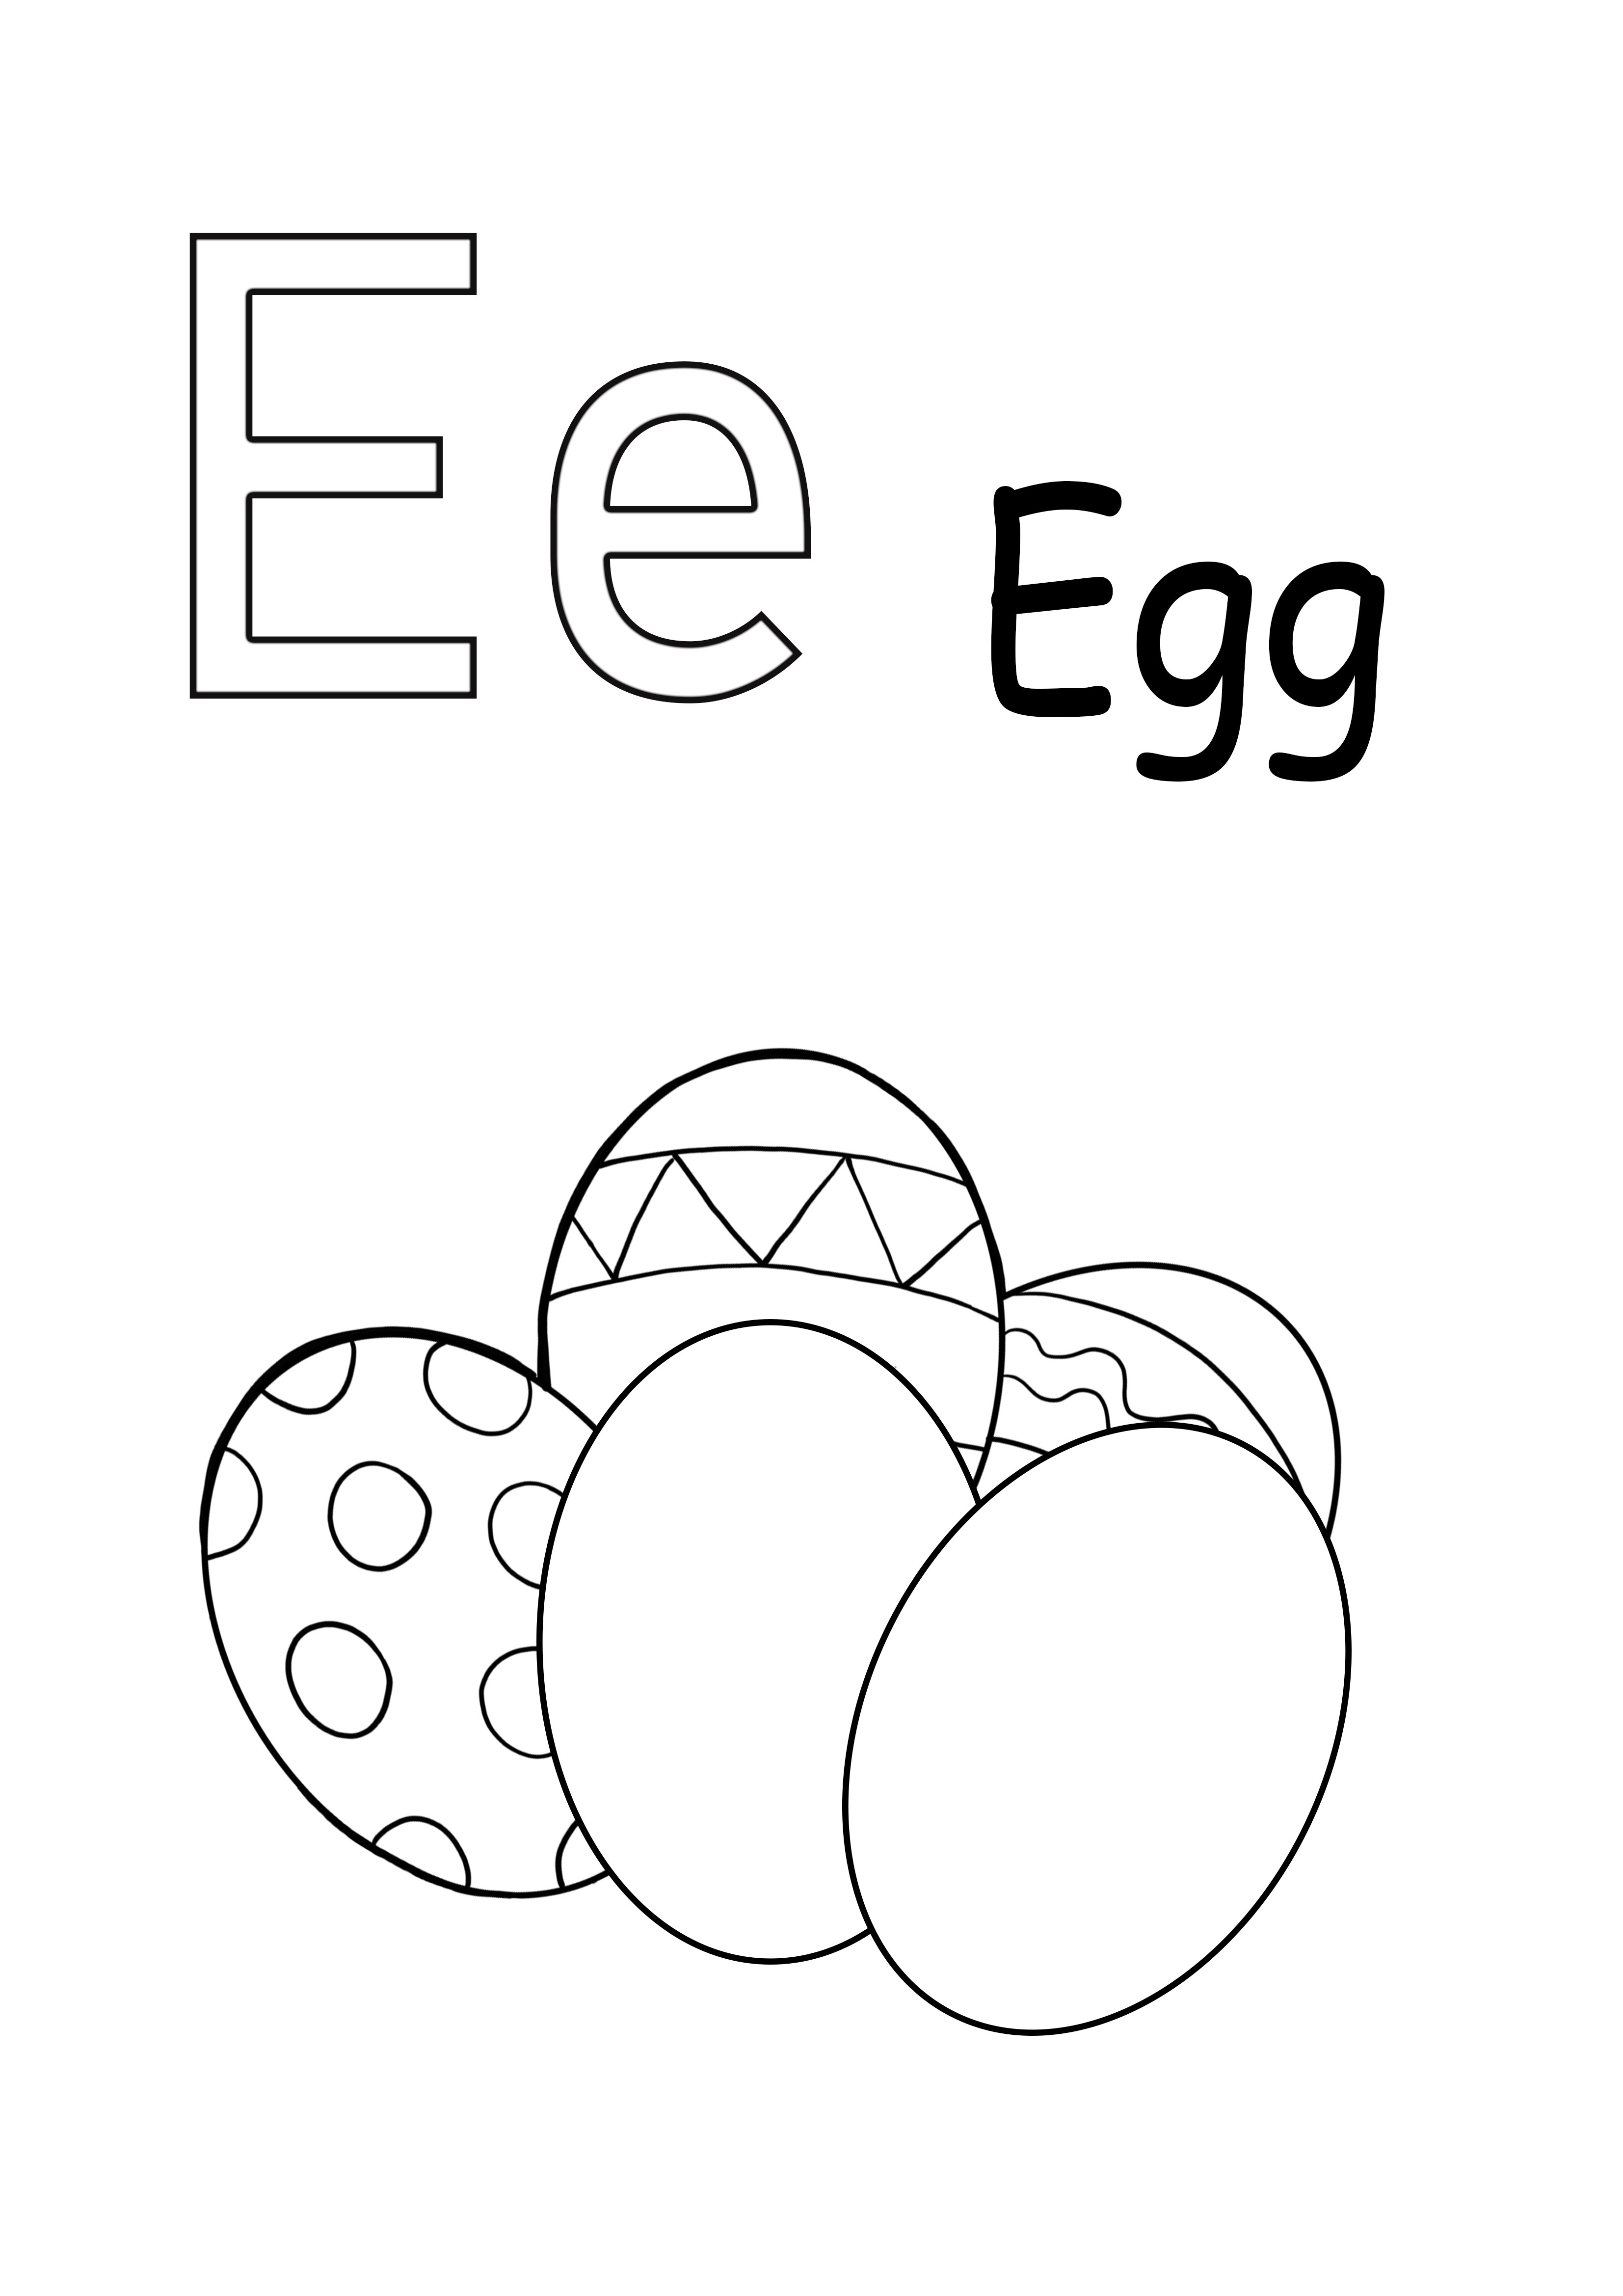 A letra E é para folha imprimível de ovo para coloração simples